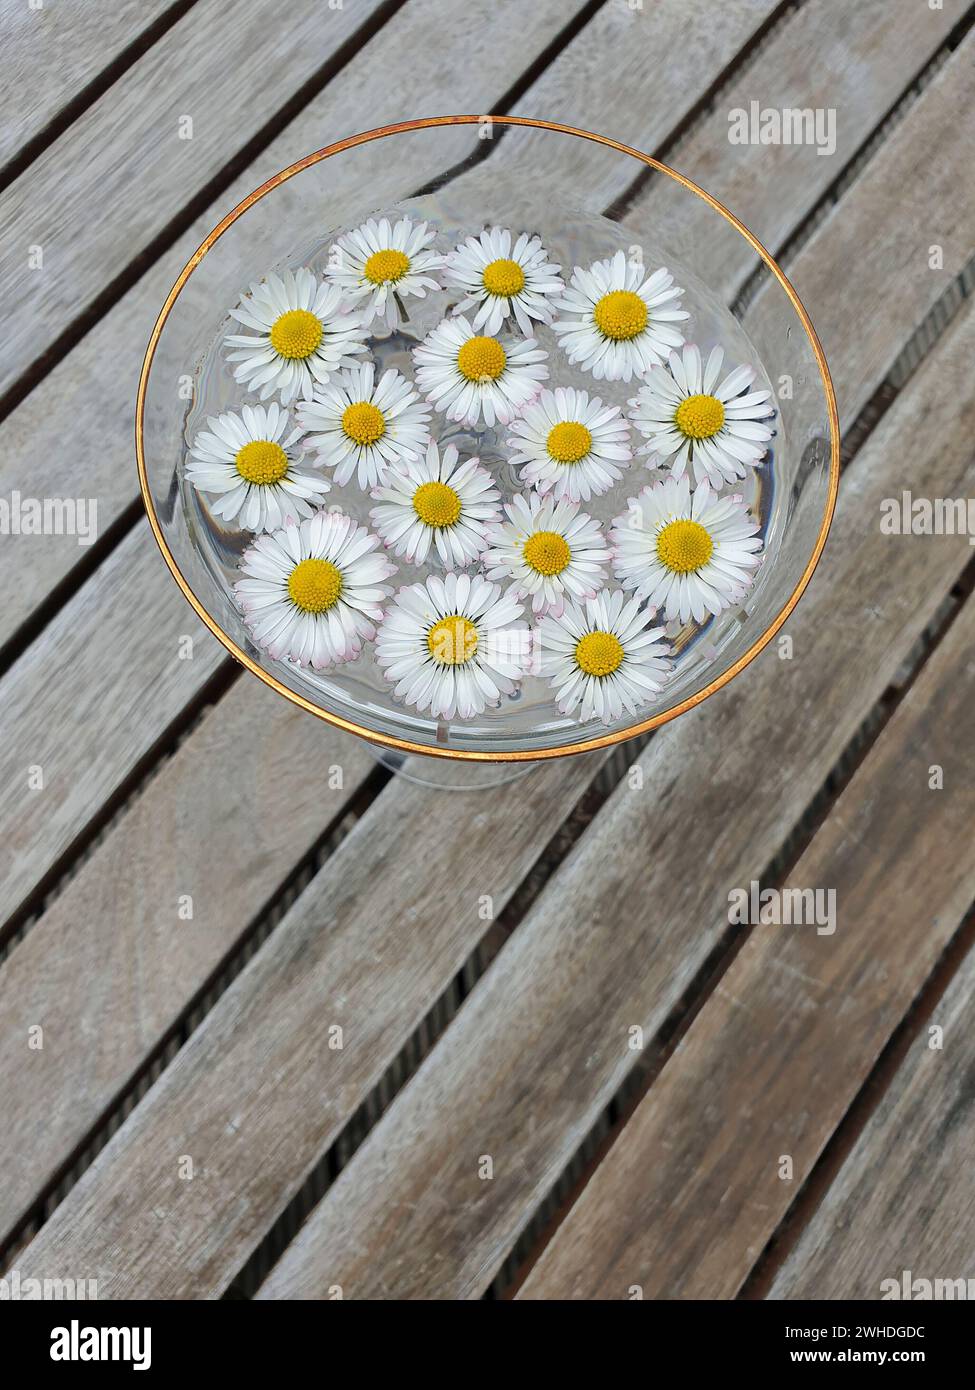 Gänseblümchen, 15 Blumenköpfe im Wasser einer Glasschale auf einem Holztisch, Deutschland Stockfoto